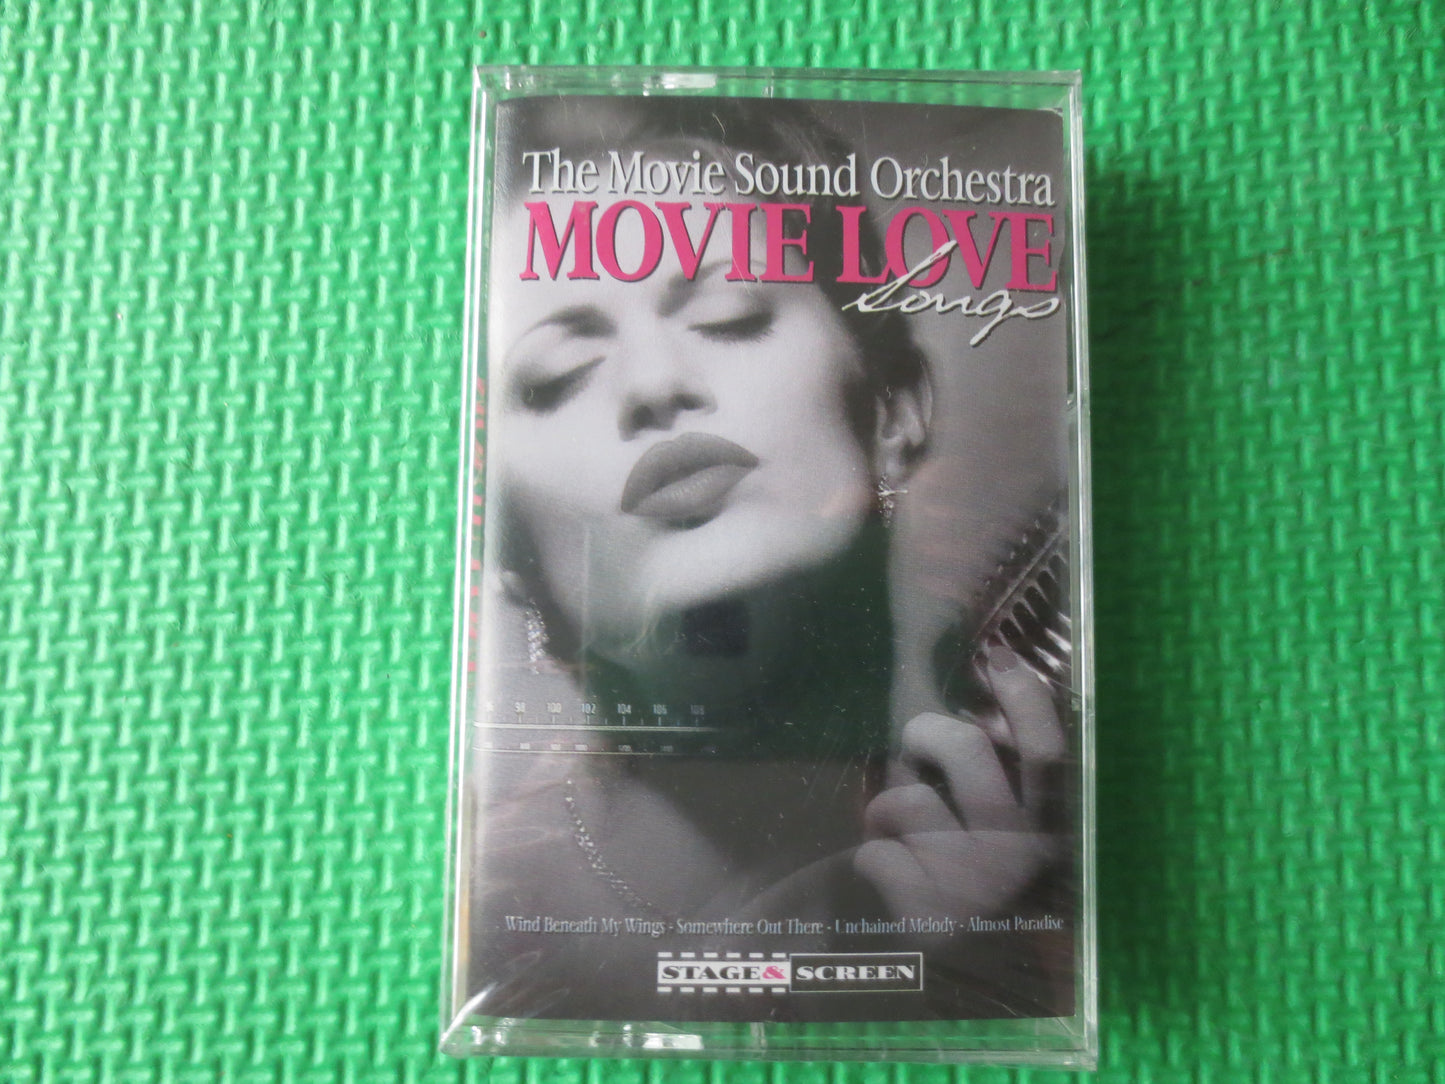 MOVIE LOVE Songs, SEALED Cassette, Cassette Tapes, Love Songs, Tape Cassette, Vintage Cassette, Music Cassette, 1998 Cassette